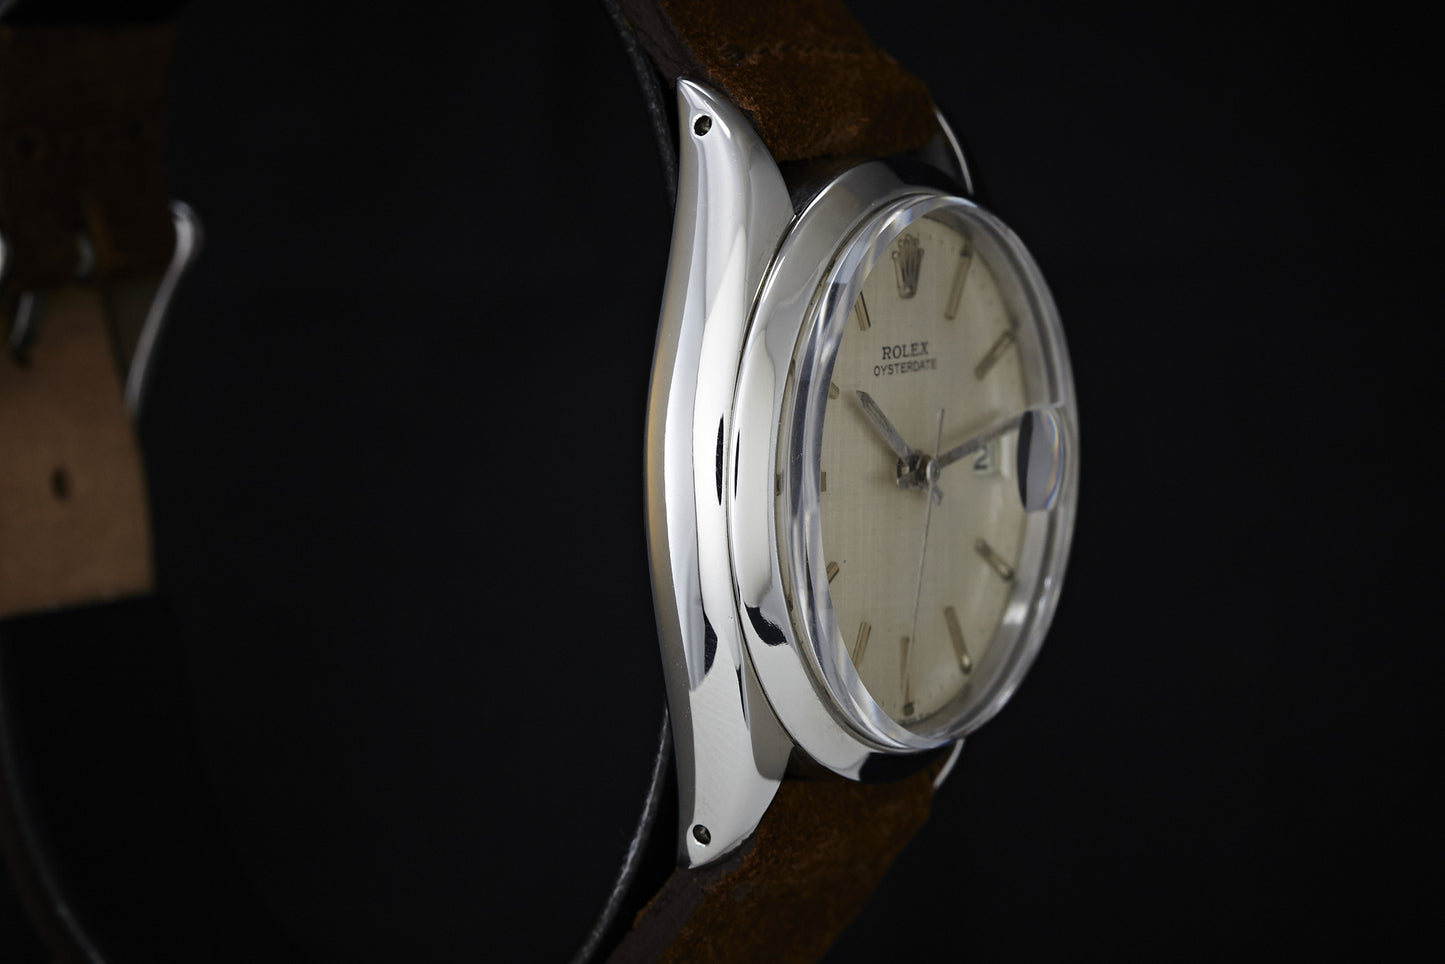 Rolex Oysterdate Linen Dial -1969